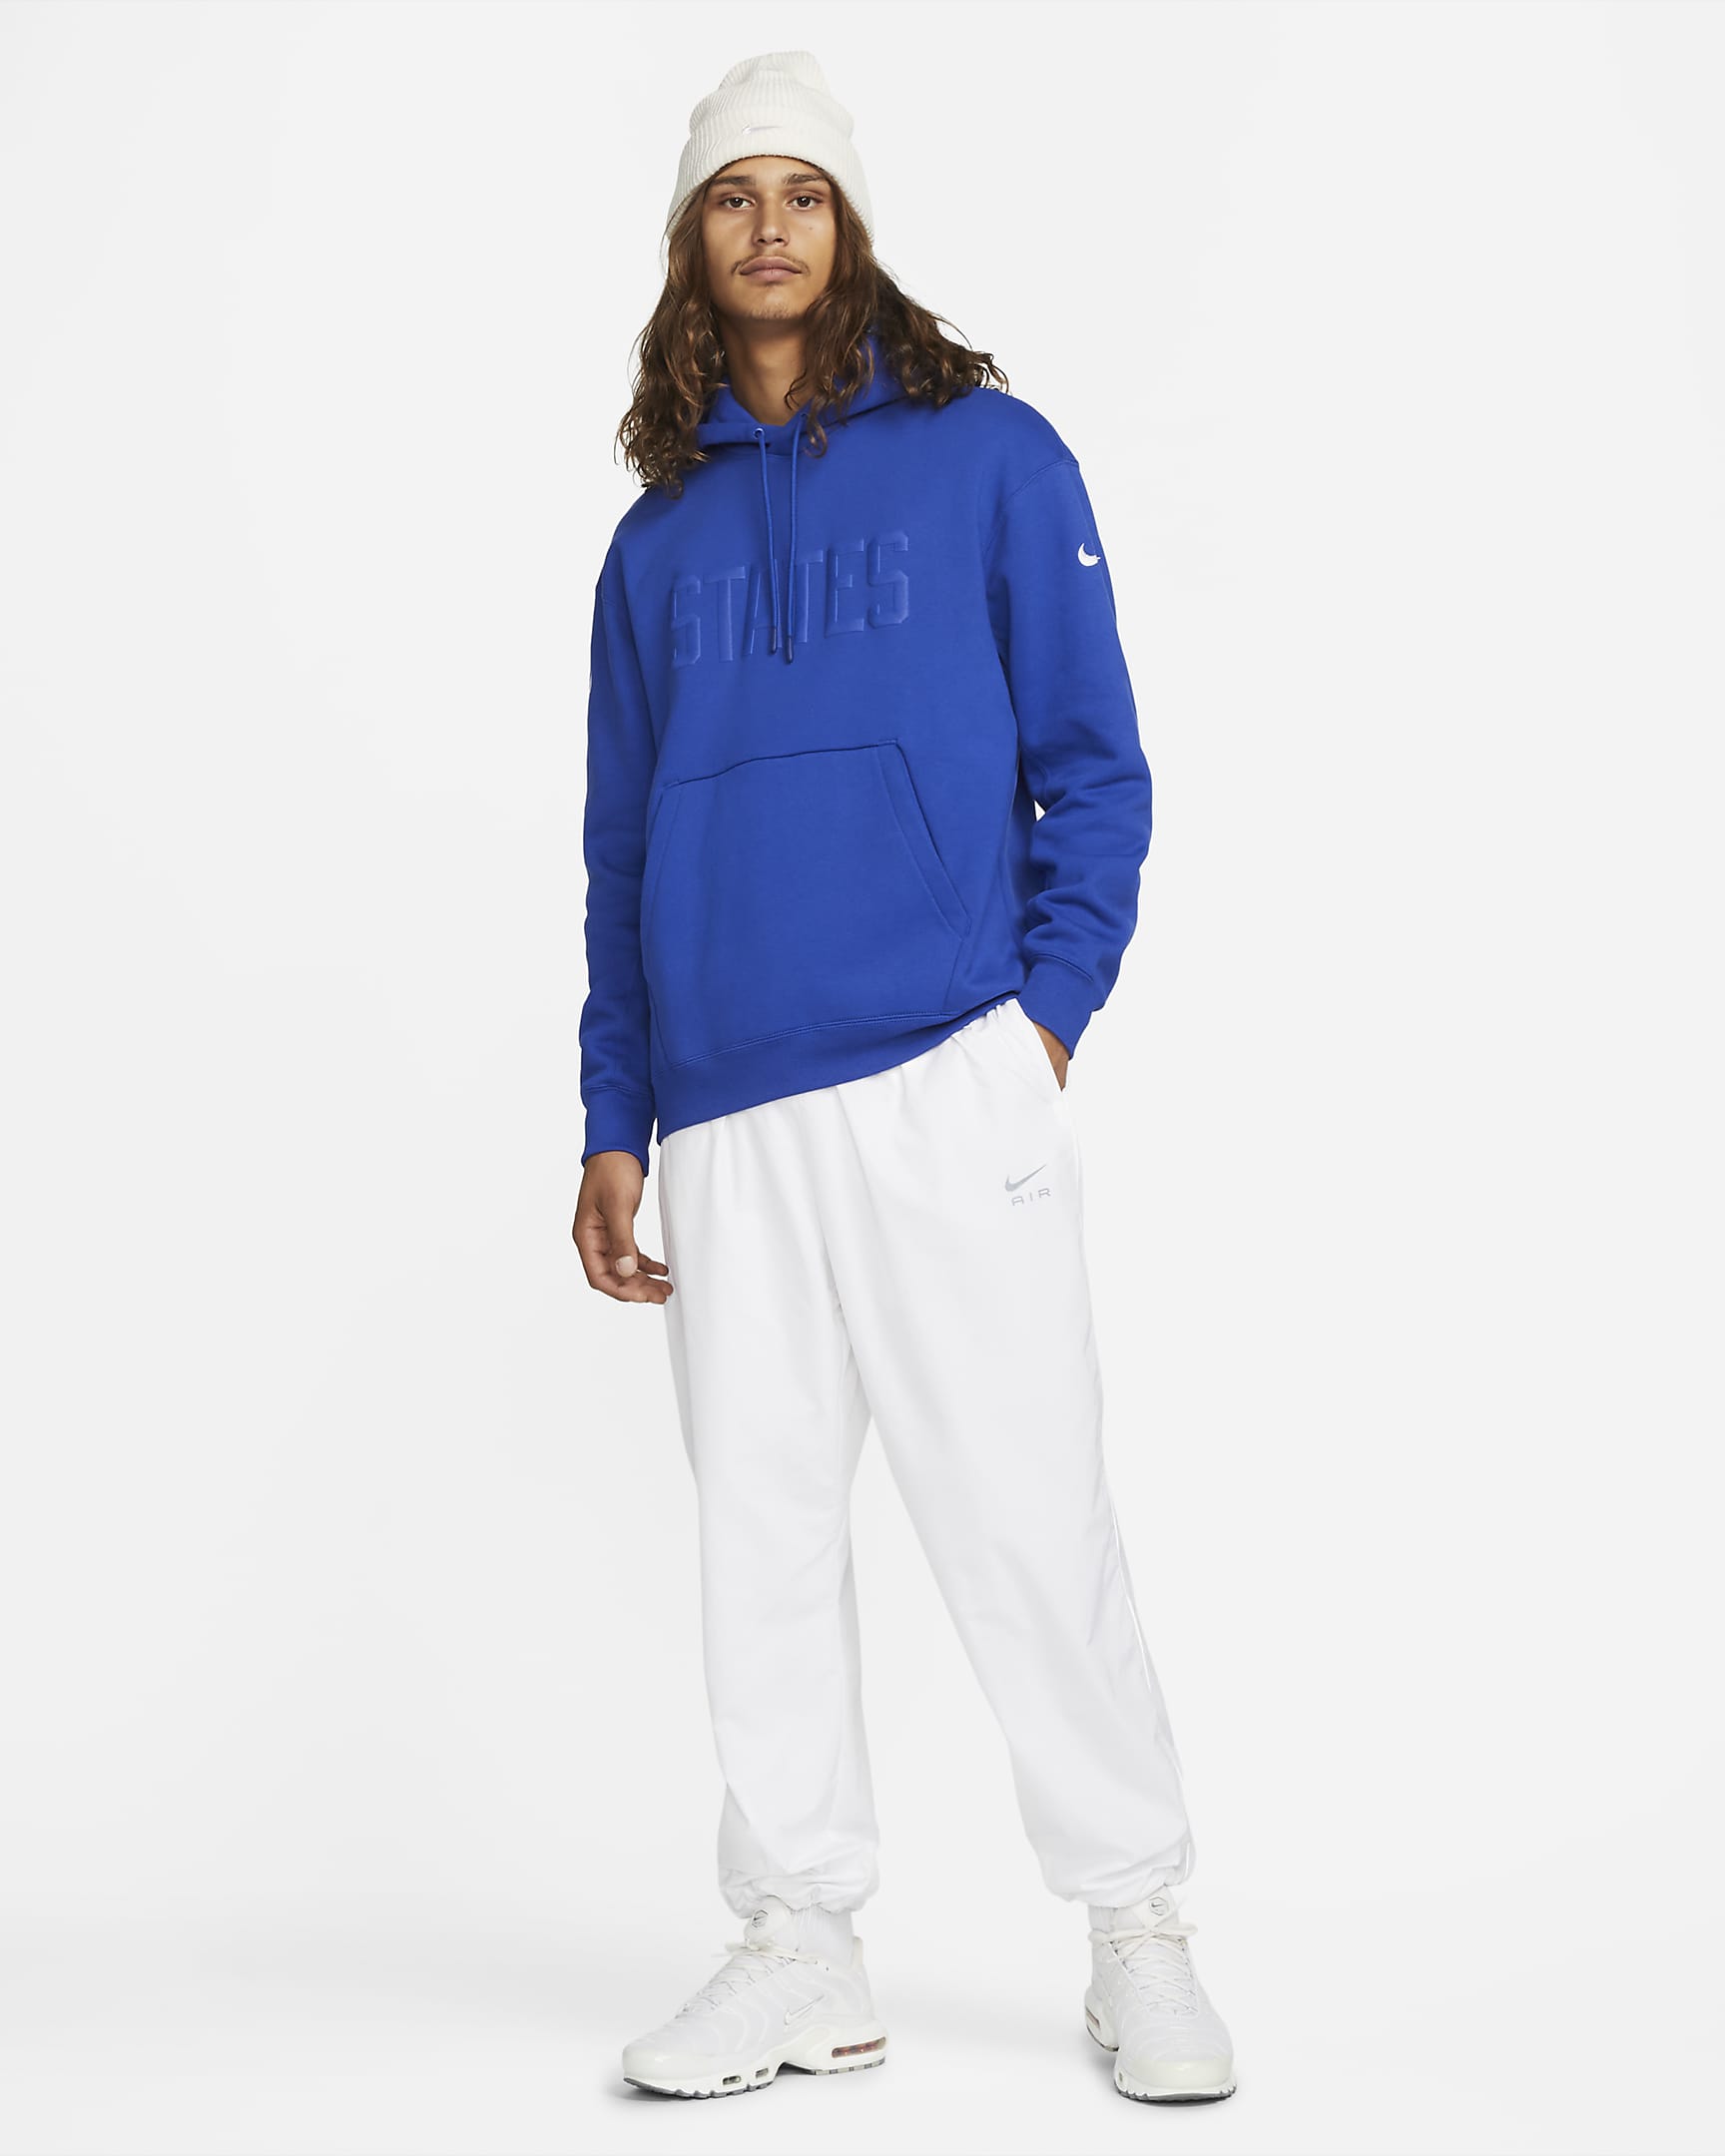 U.S. Men's Fleece Pullover Hoodie. Nike.com